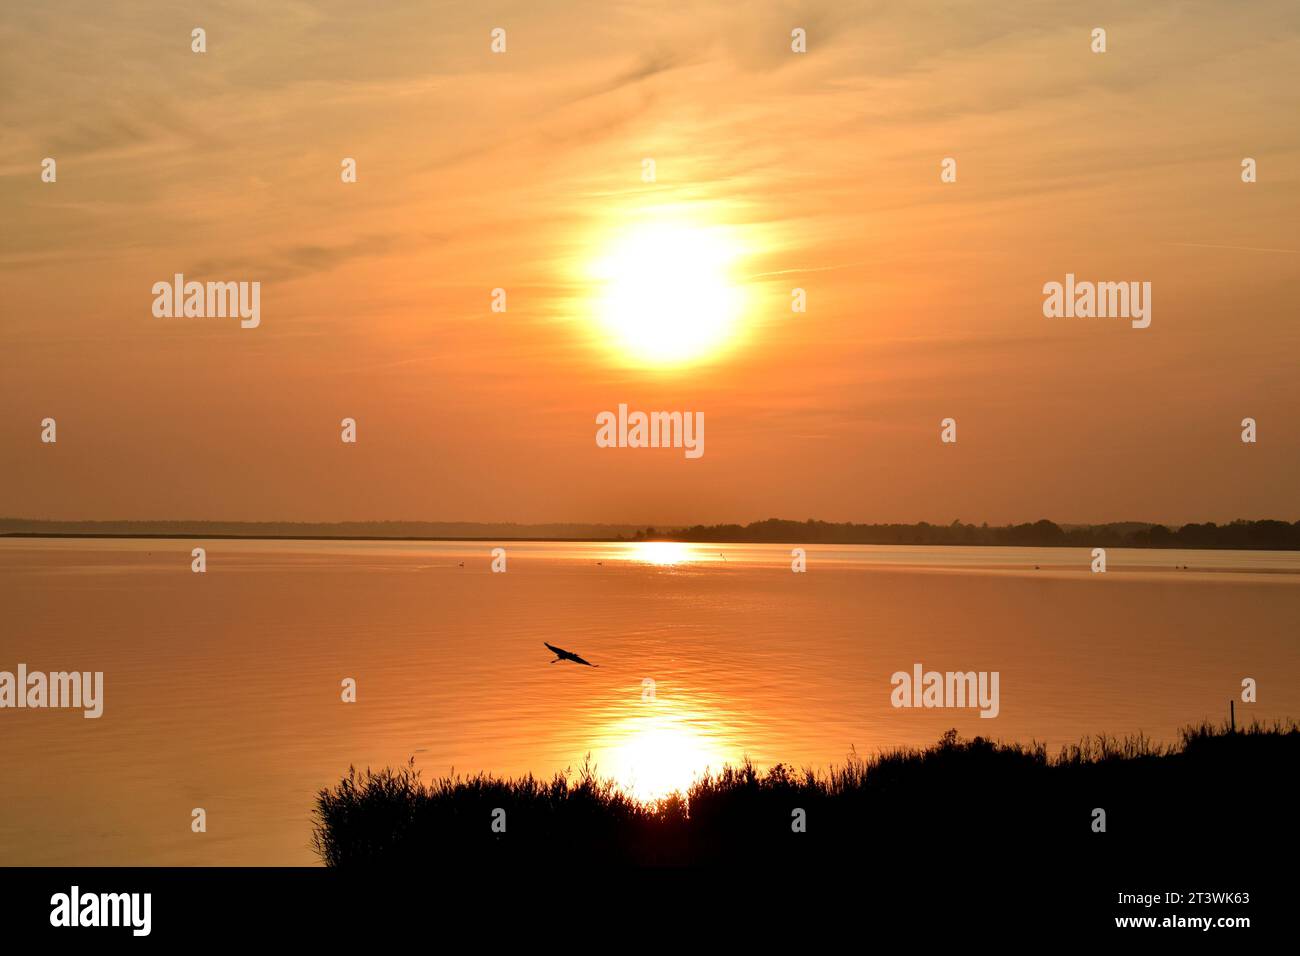 Schwarze Silhouette eines einsamen Krans, der in einen wunderschönen orangen Sonnenuntergang über der ruhigen Ostsee in Deutschland fliegt Stockfoto